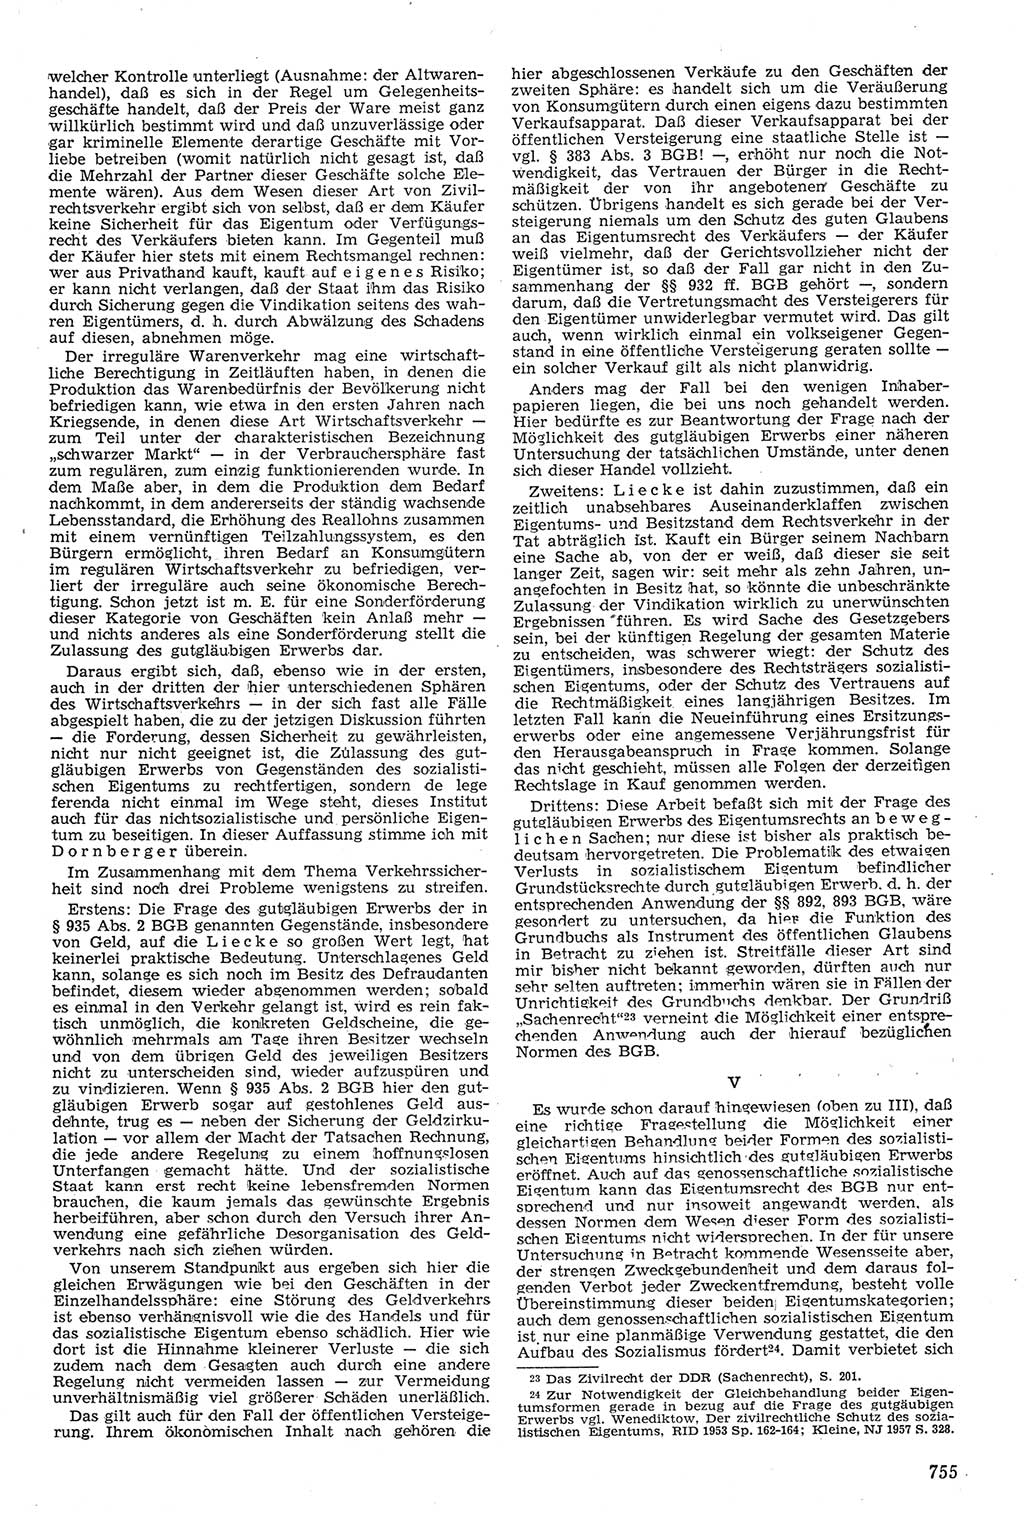 Neue Justiz (NJ), Zeitschrift für Recht und Rechtswissenschaft [Deutsche Demokratische Republik (DDR)], 11. Jahrgang 1957, Seite 755 (NJ DDR 1957, S. 755)